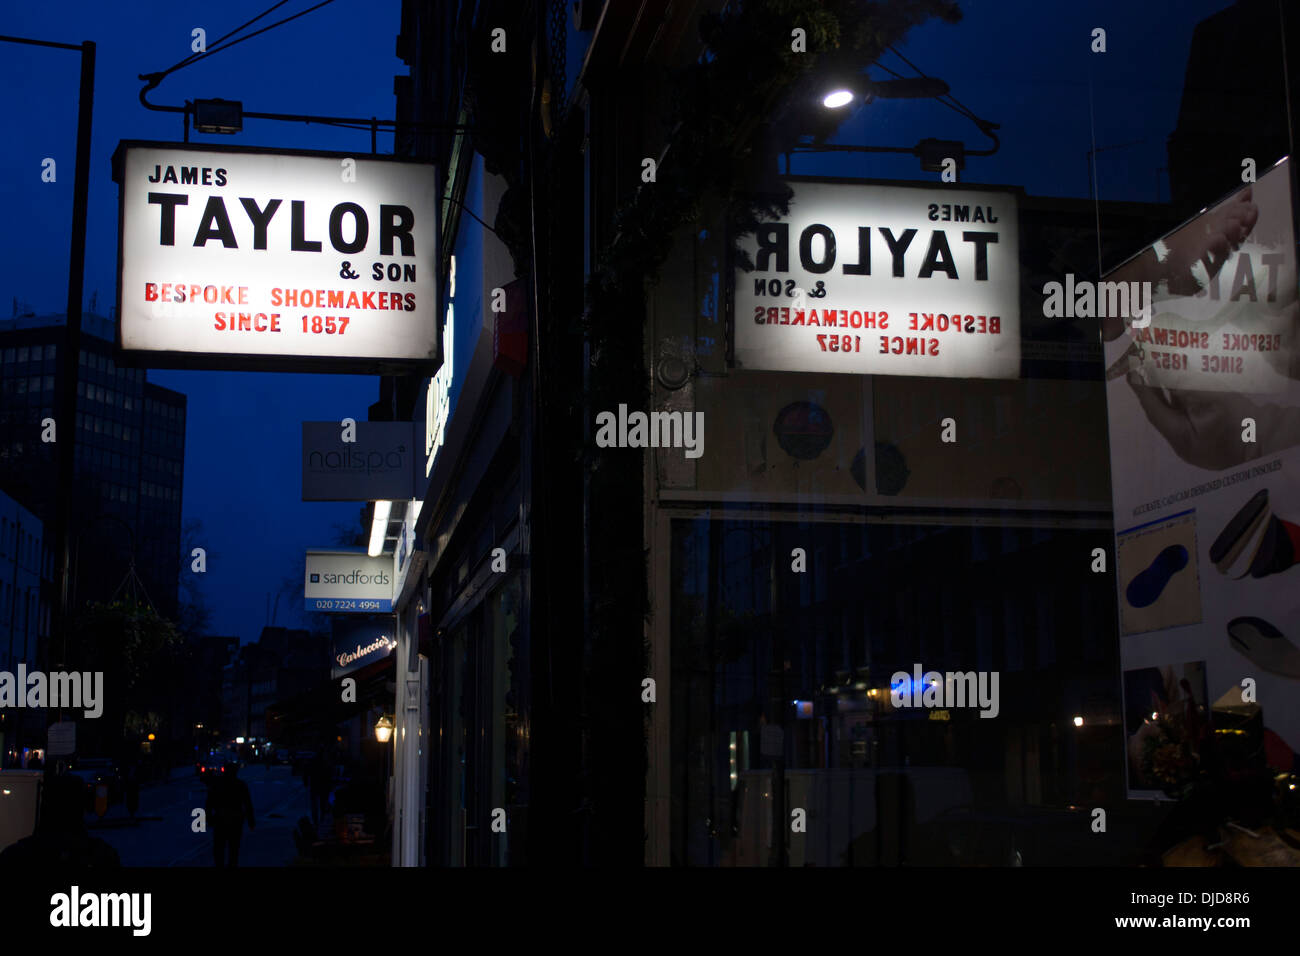 James Taylor & Son Bespoke Shoemakers Since 1857 sign outside shoe / shoemaker shop at dusk / night Marylebone London England UK Stock Photo